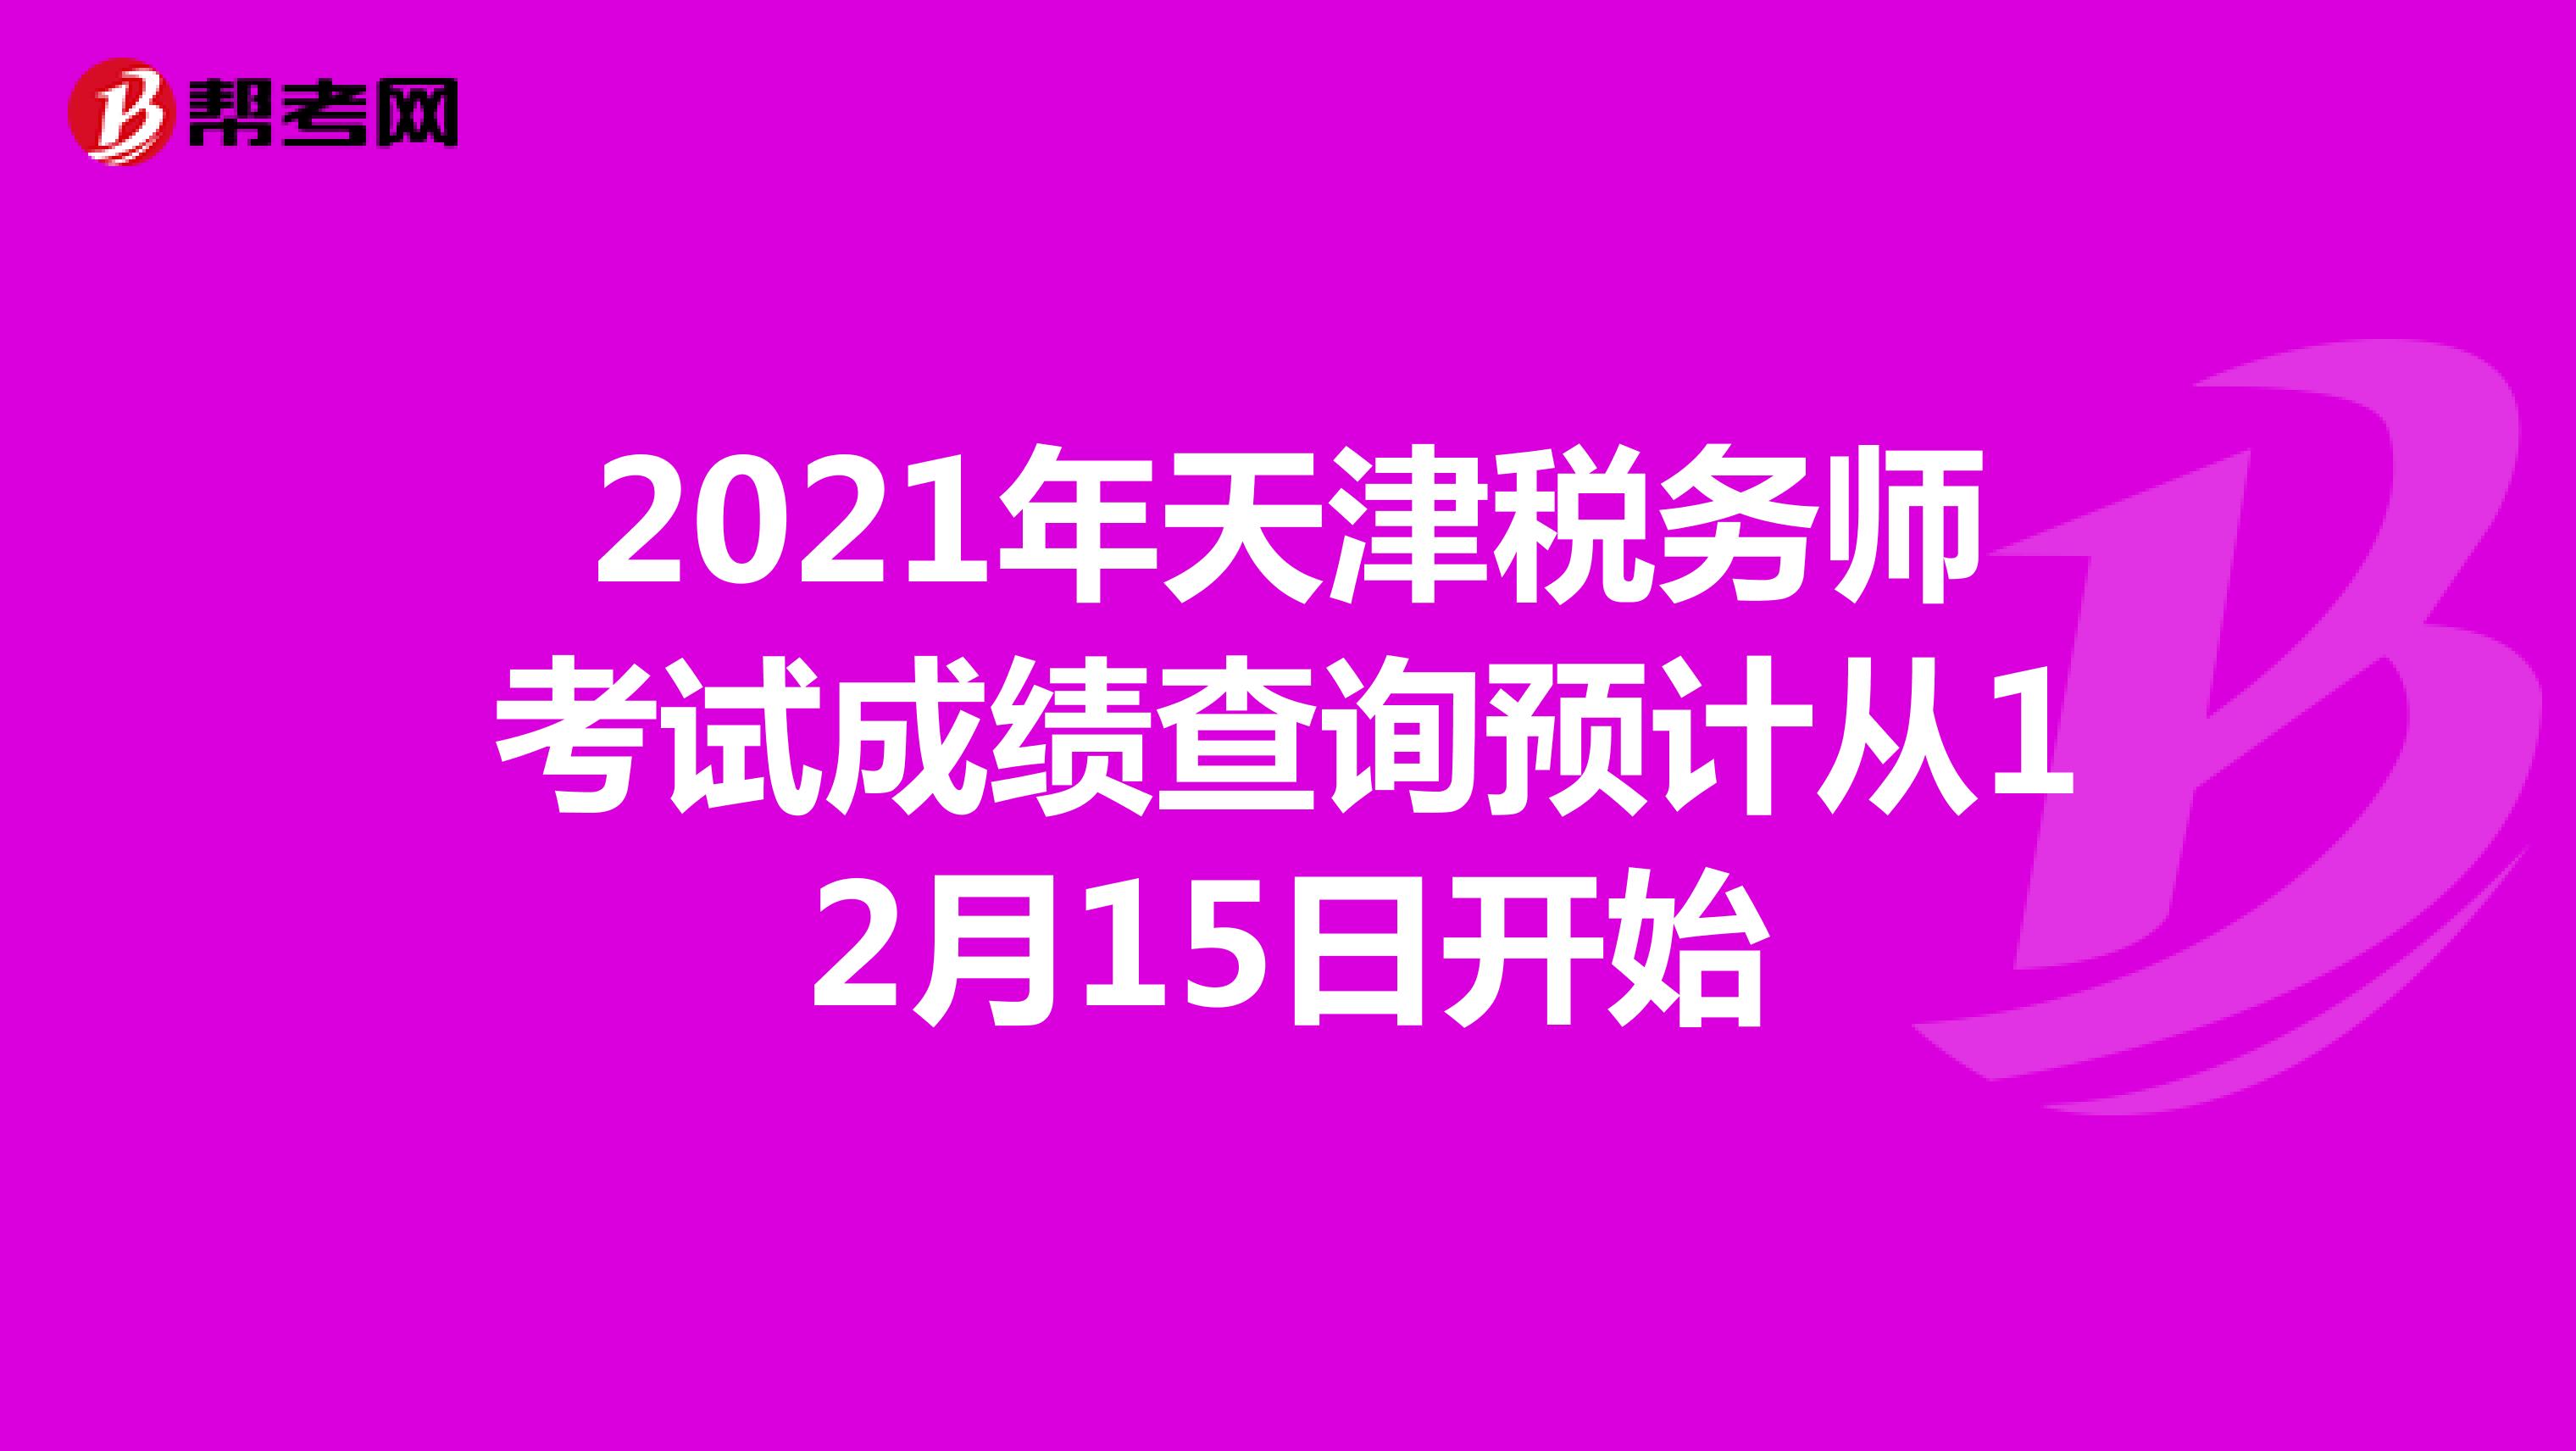 2021年天津税务师考试成绩查询预计从12月15日开始